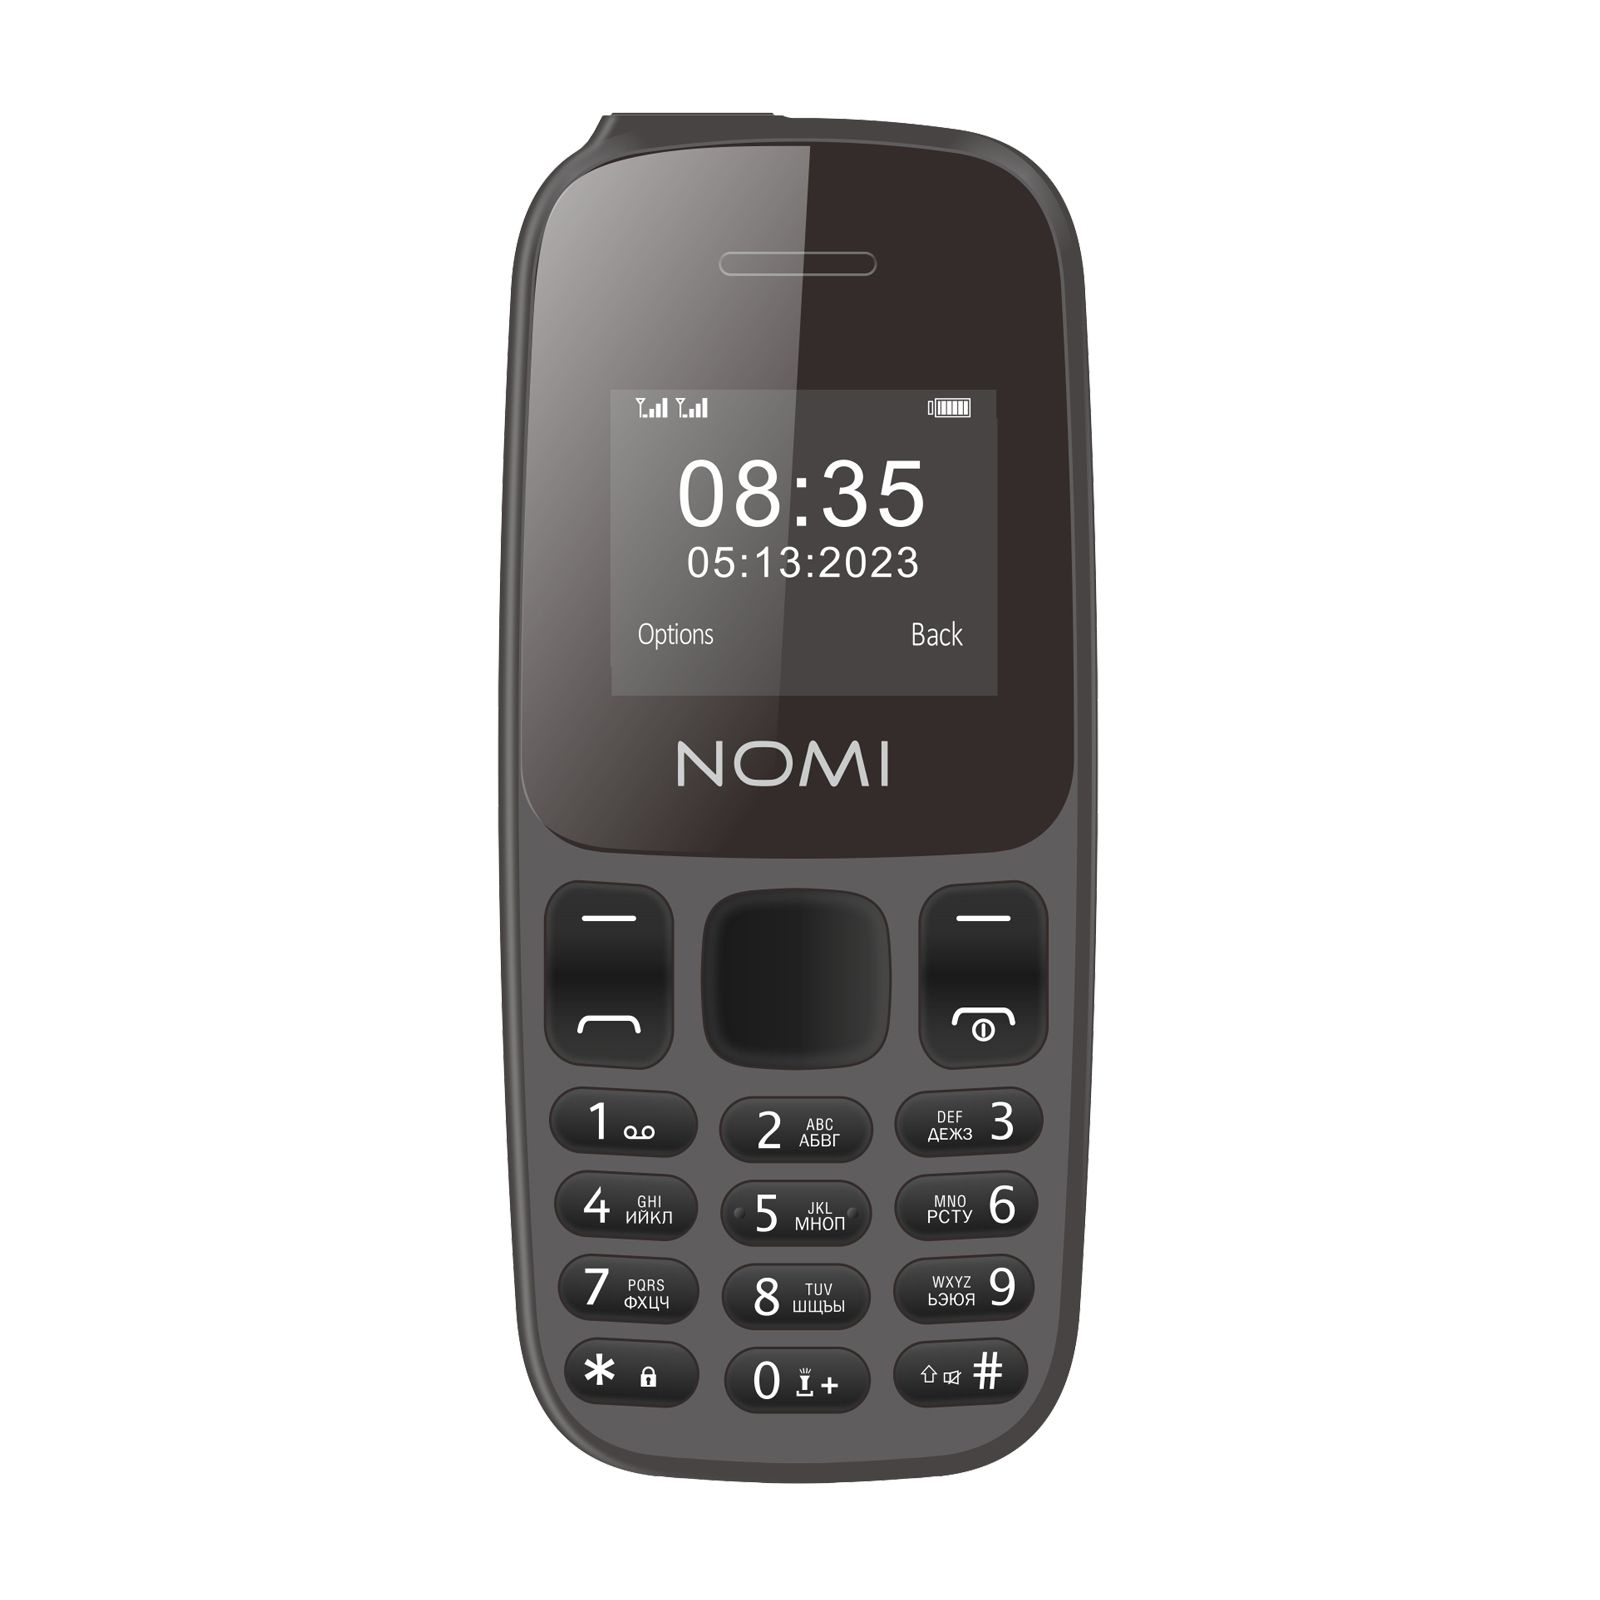 Мобильный телефон Nomi i1440 Red изображение 2